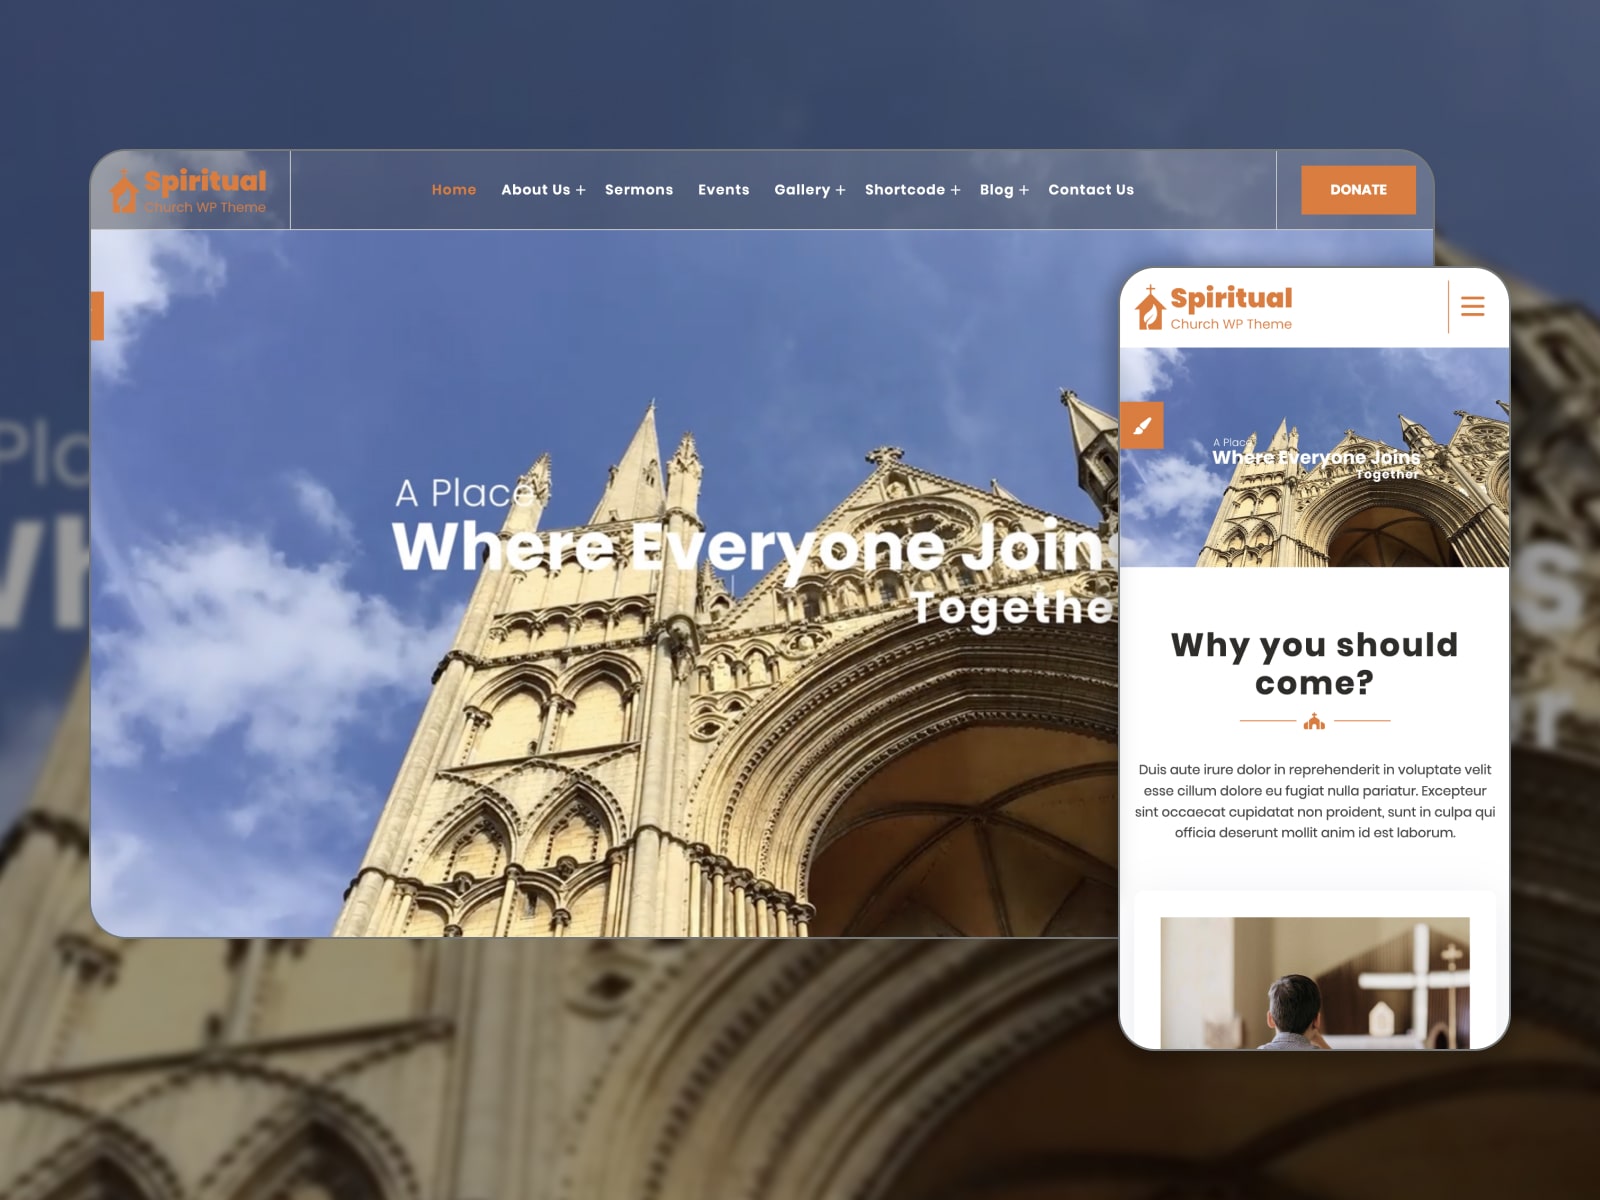 Collage of the FSE Spiritual free theme for WordPress churches sites.